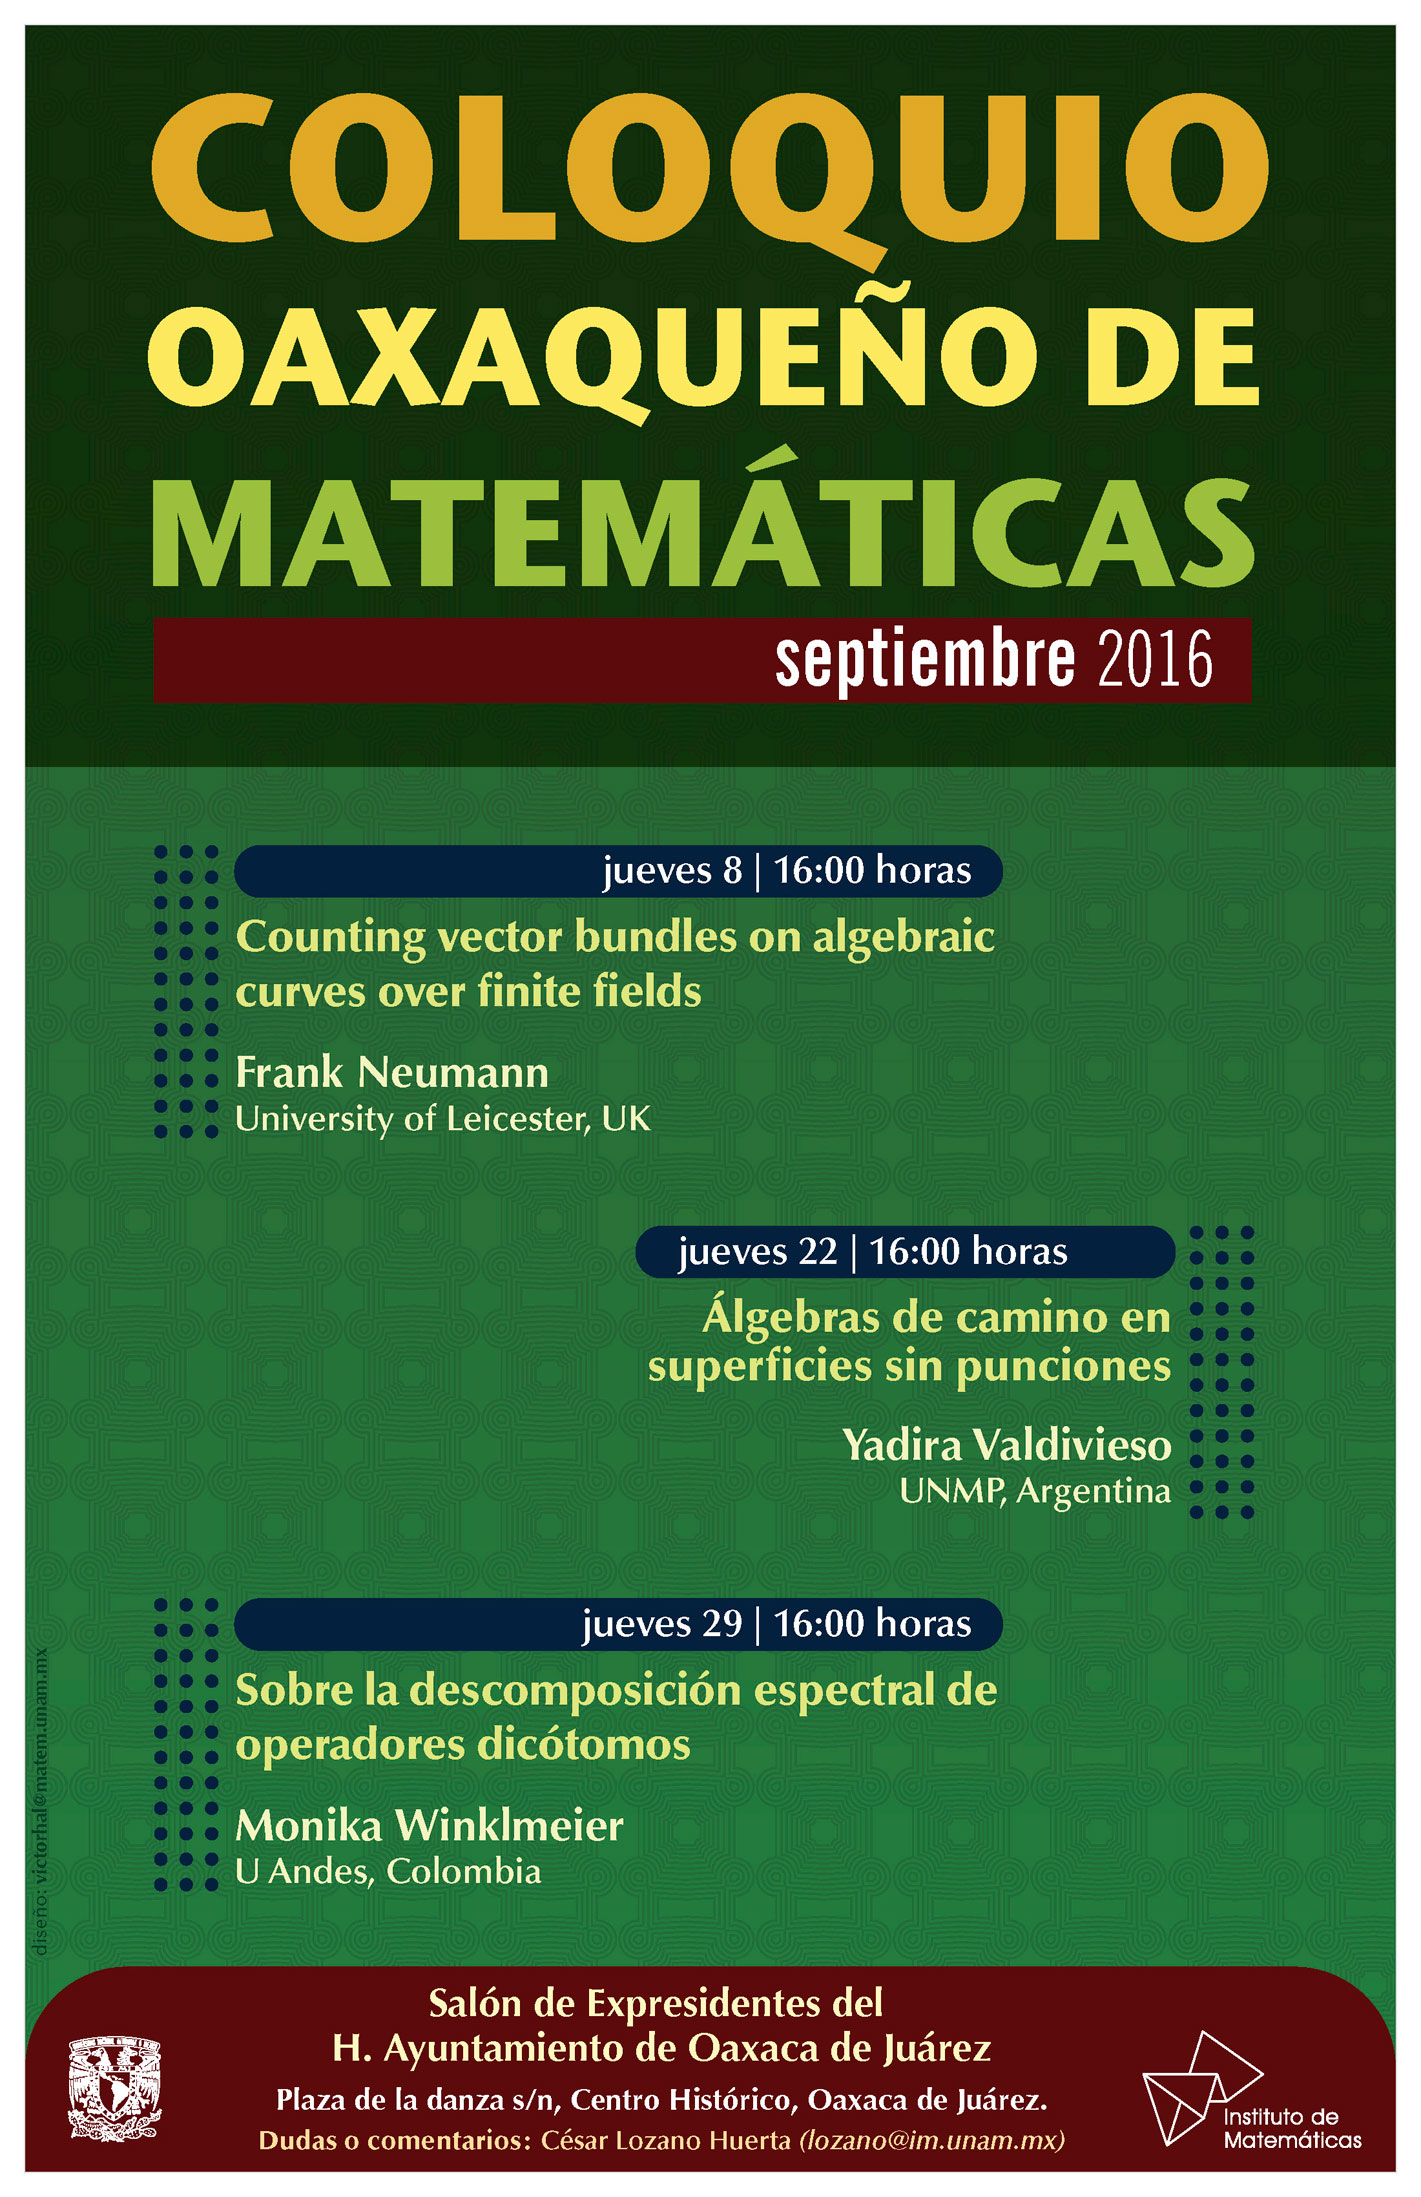 Septiembre: Coloquio Oaxaqueño de Matemáticas